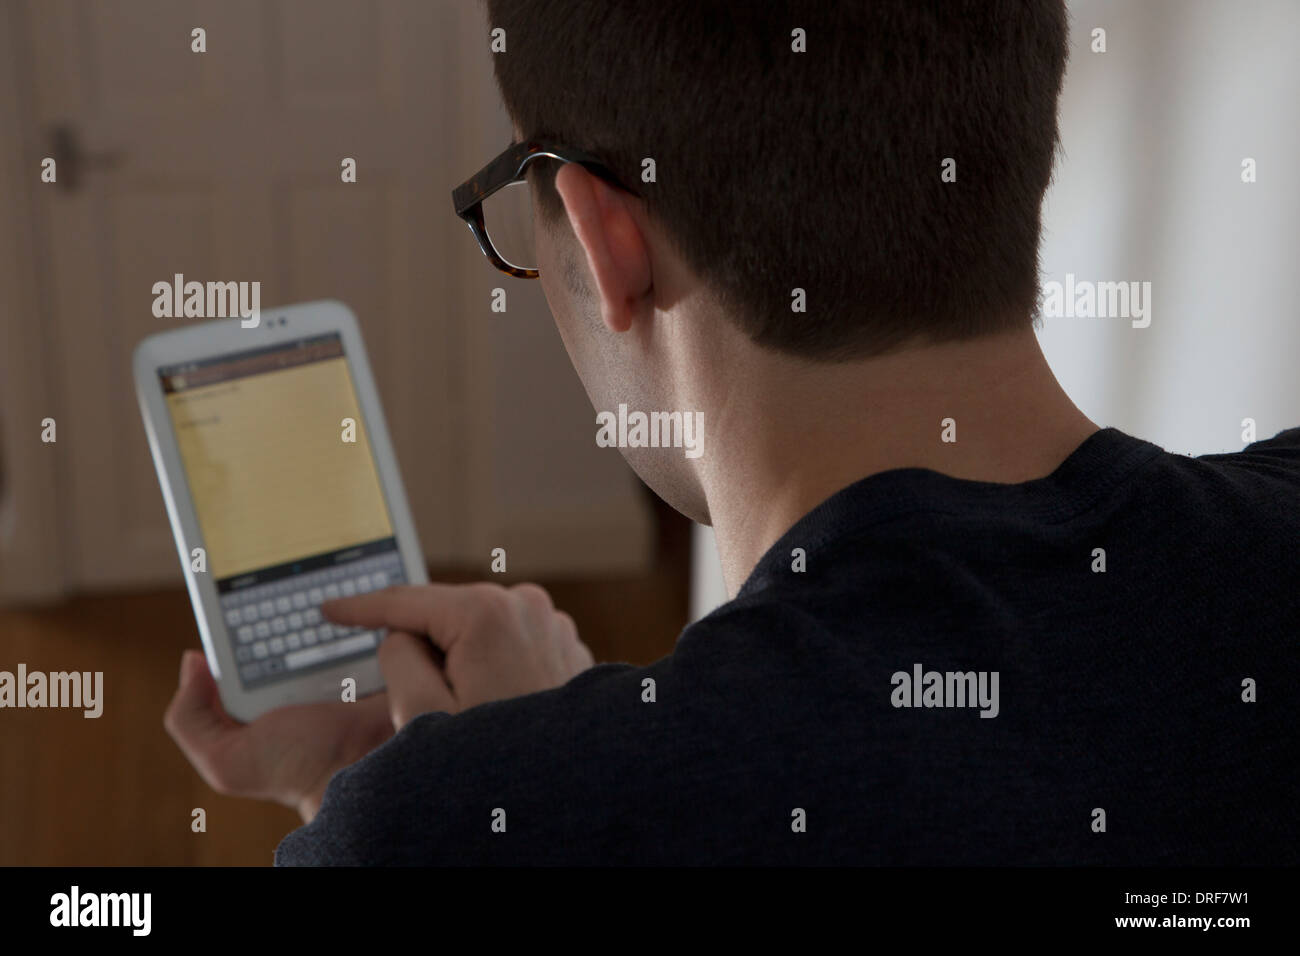 Sulla spalla colpo di uomo che indossa gli occhiali digitando su una tastiera sullo schermo a sfioramento digitale compressa. Foto Stock